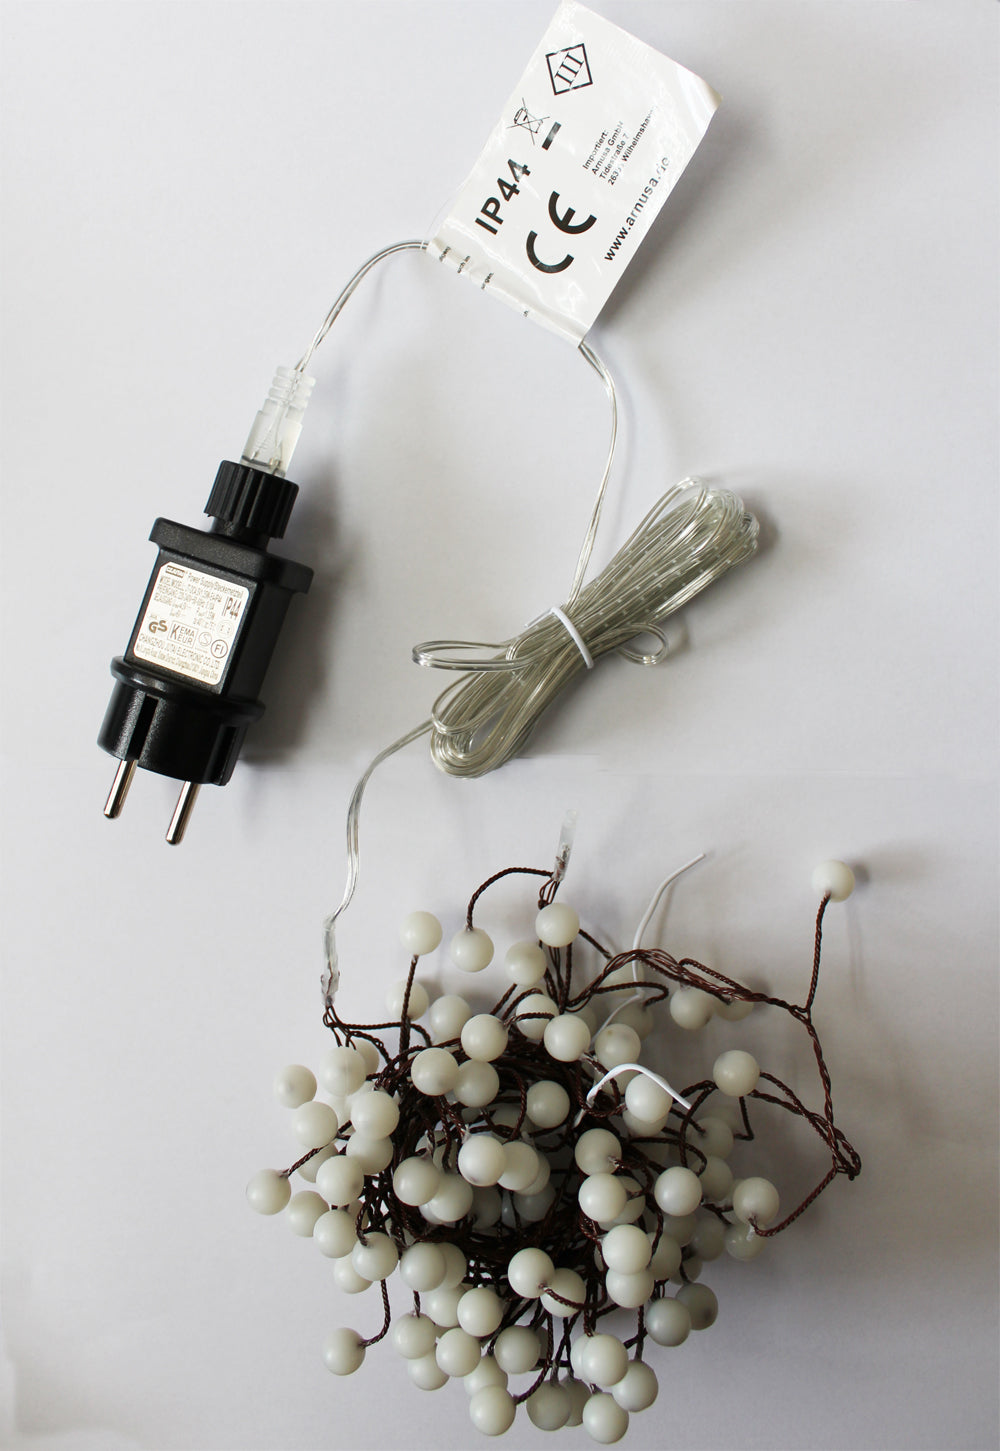 Arnusa LED-Leuchtzweig Lichterzweig 2,6m warmweiß Lichterkette LED Ast Baum,  72-flammig, Weihnachtsbeleuchtung für Innen und Außen